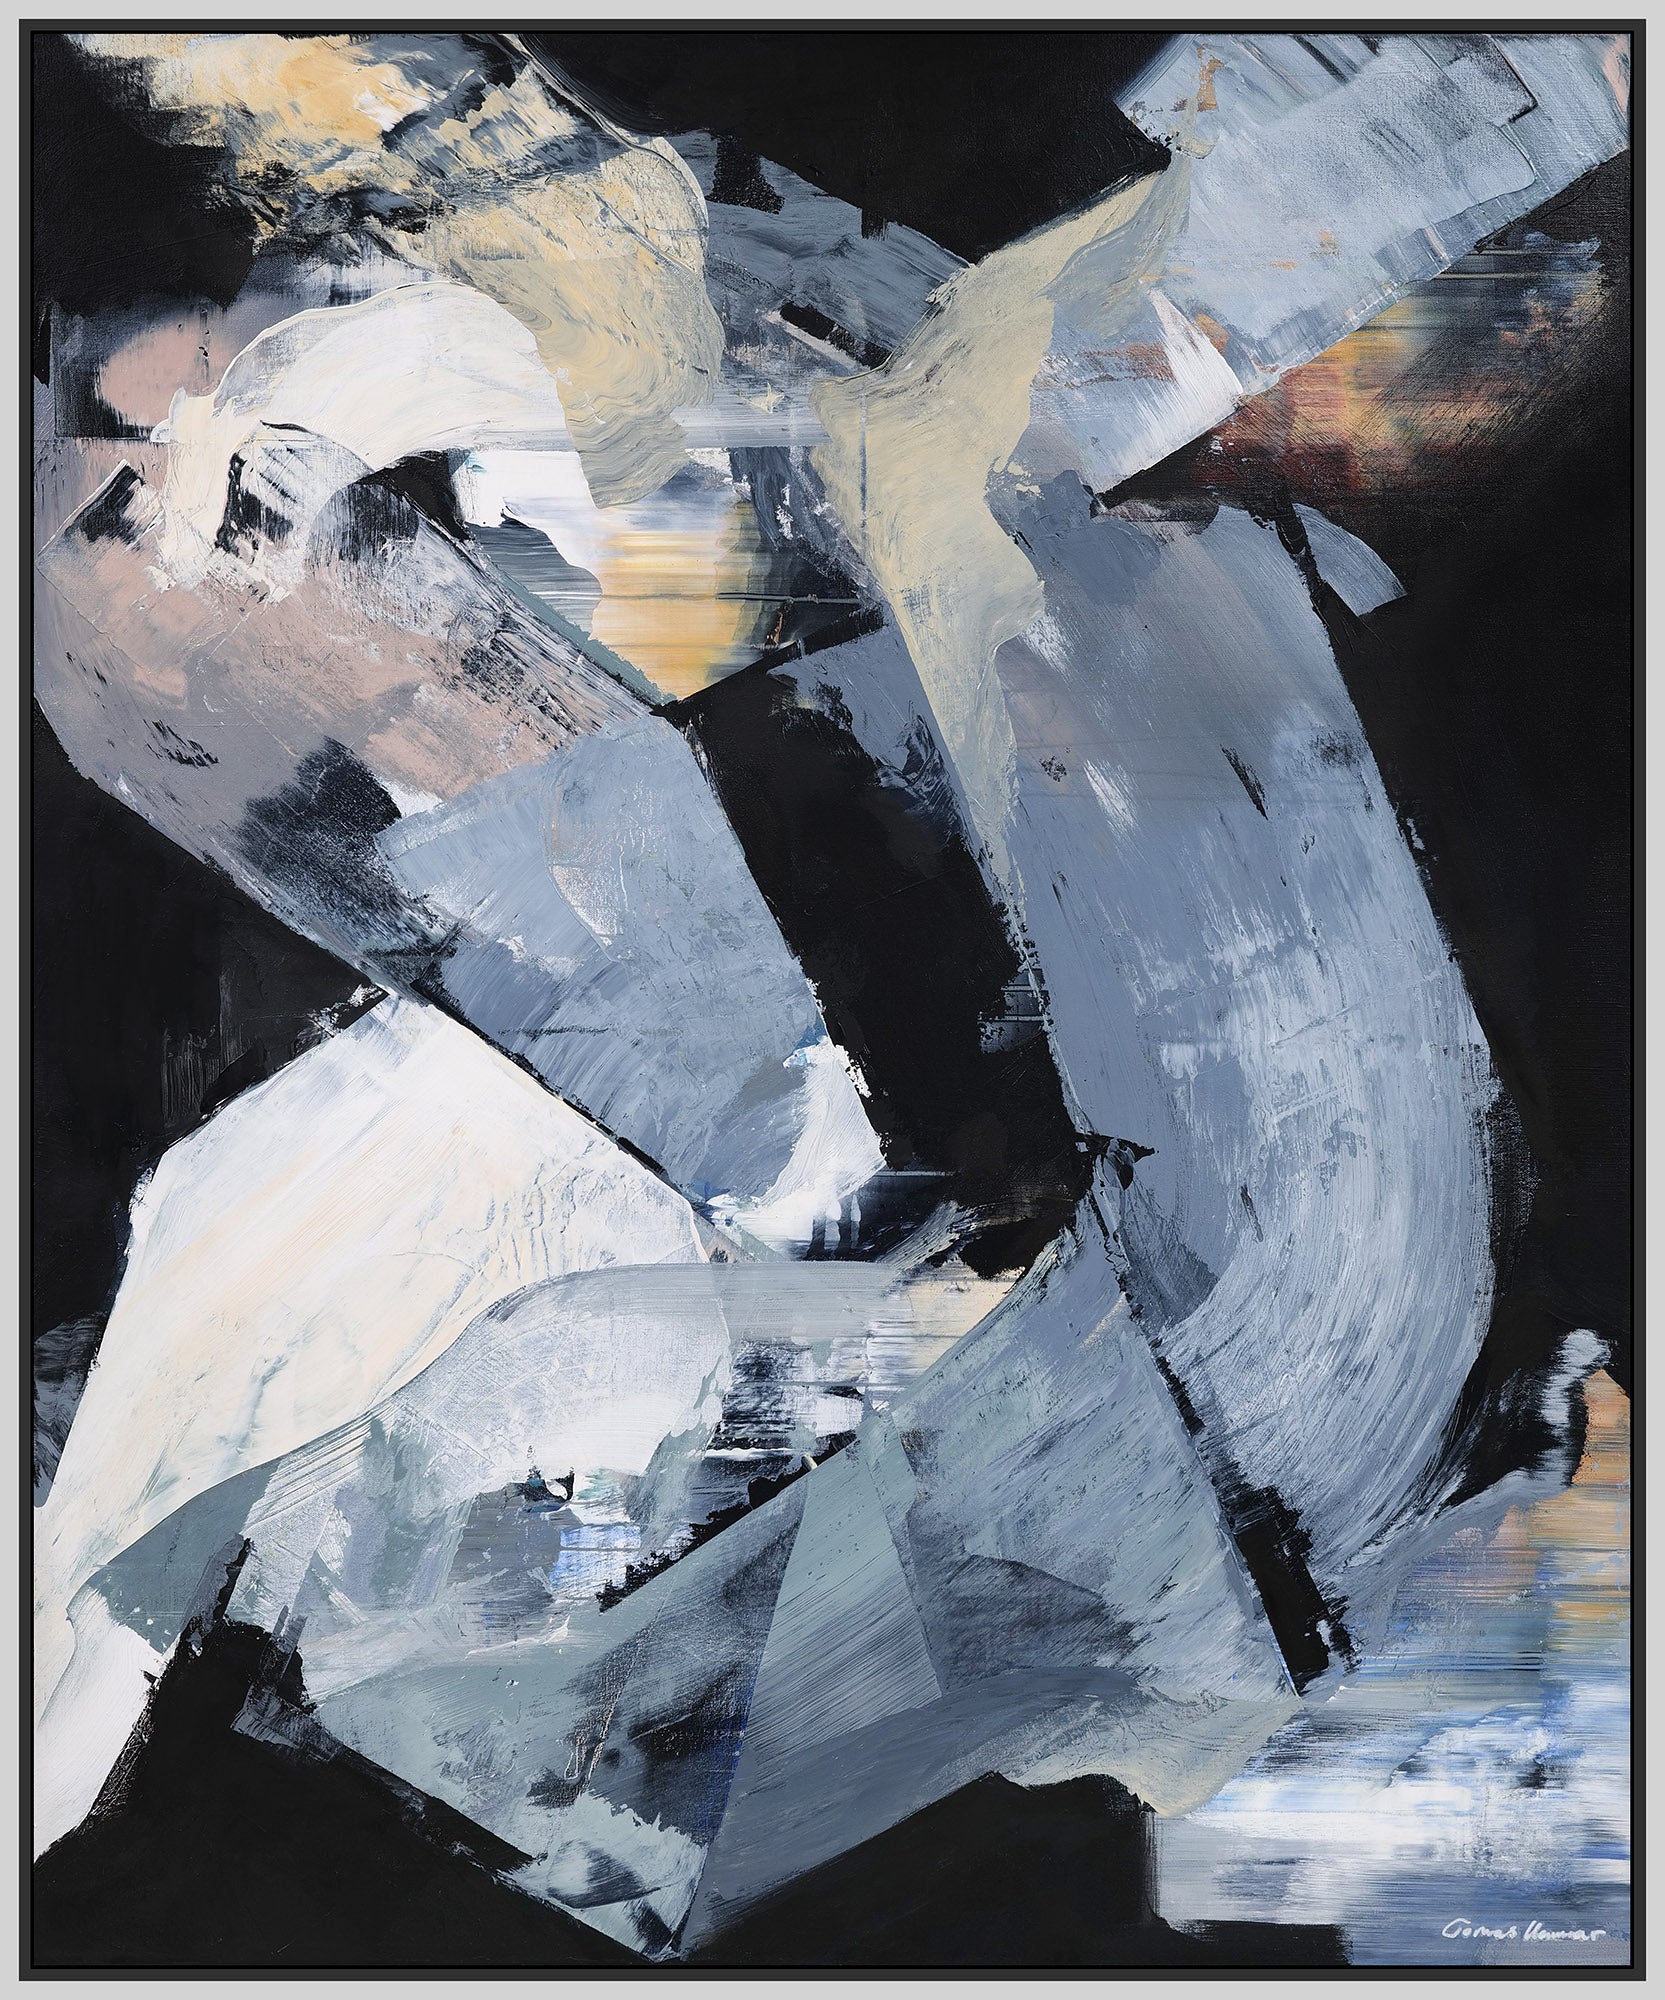 Tomas Hammar - Abstrakt konst som fångar rörelse och energi genom kreativa former.